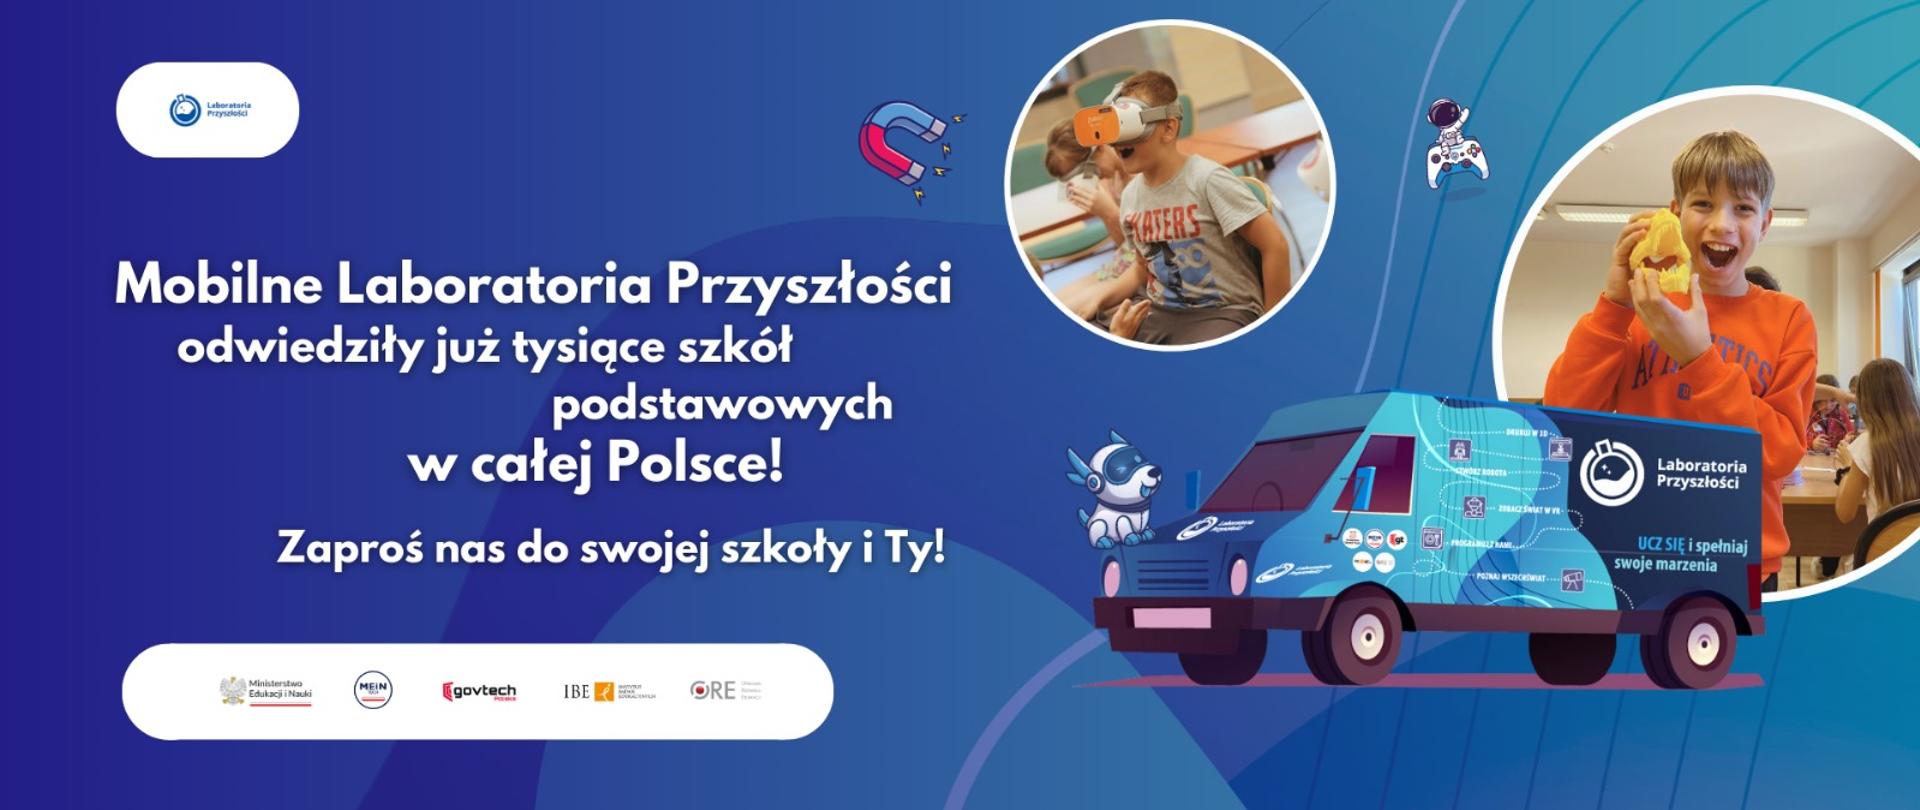 Grafika - na niebieskim tle furgonetka i napis Mobilne Laboratoria Przyszłości odwiedziły już tysiące szkół podstawowych w całej Polsce.